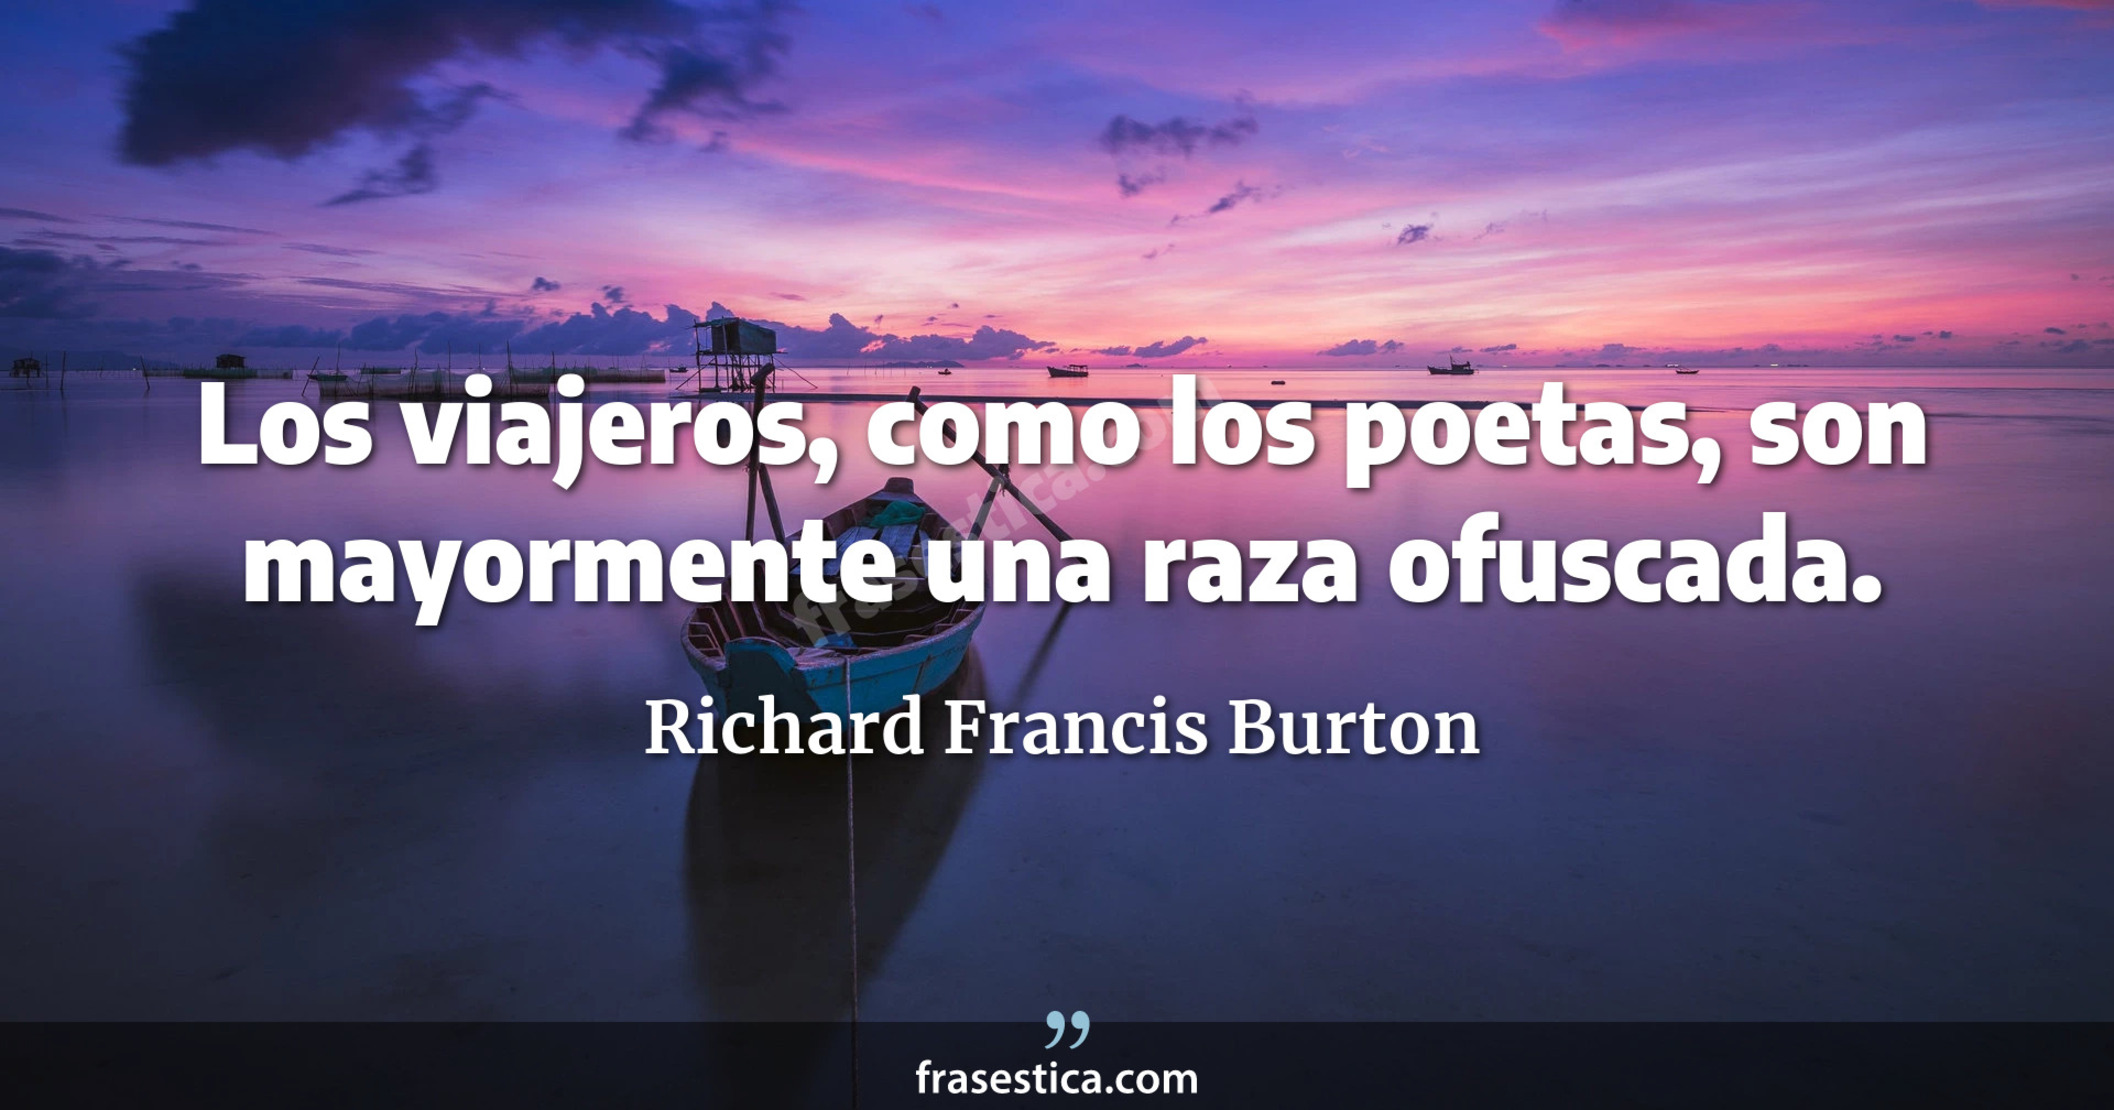 Los viajeros, como los poetas, son mayormente una raza ofuscada. - Richard Francis Burton